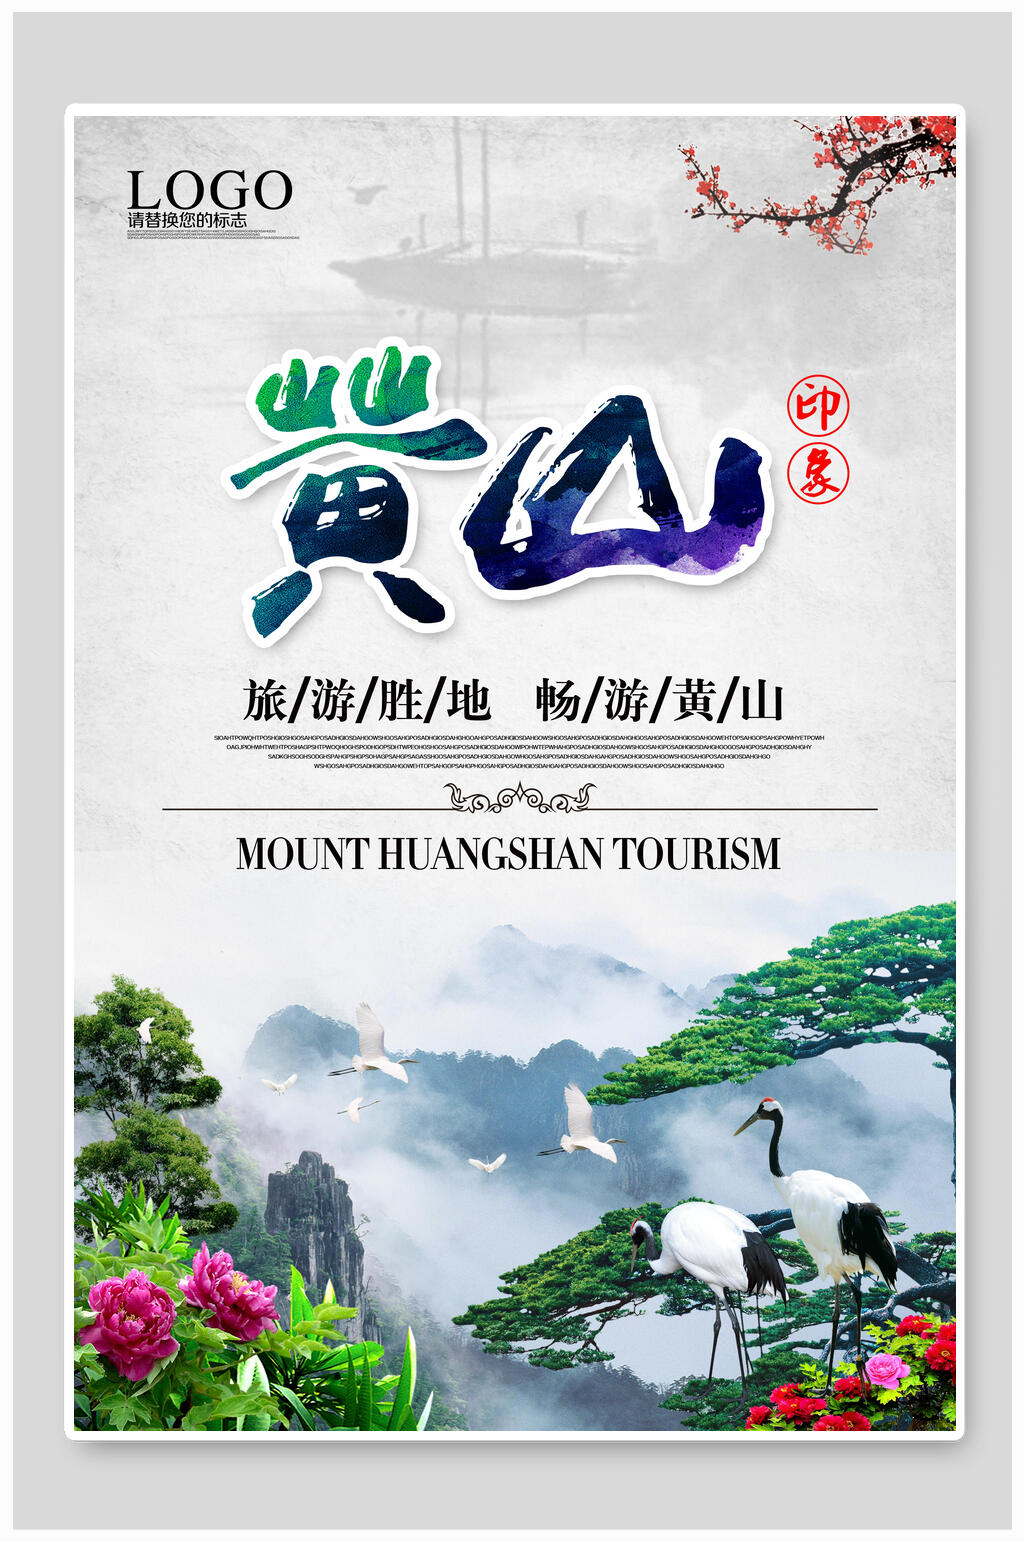 黄山旅行海报素材免费下载,本作品是由月月上传的原创平面广告素材